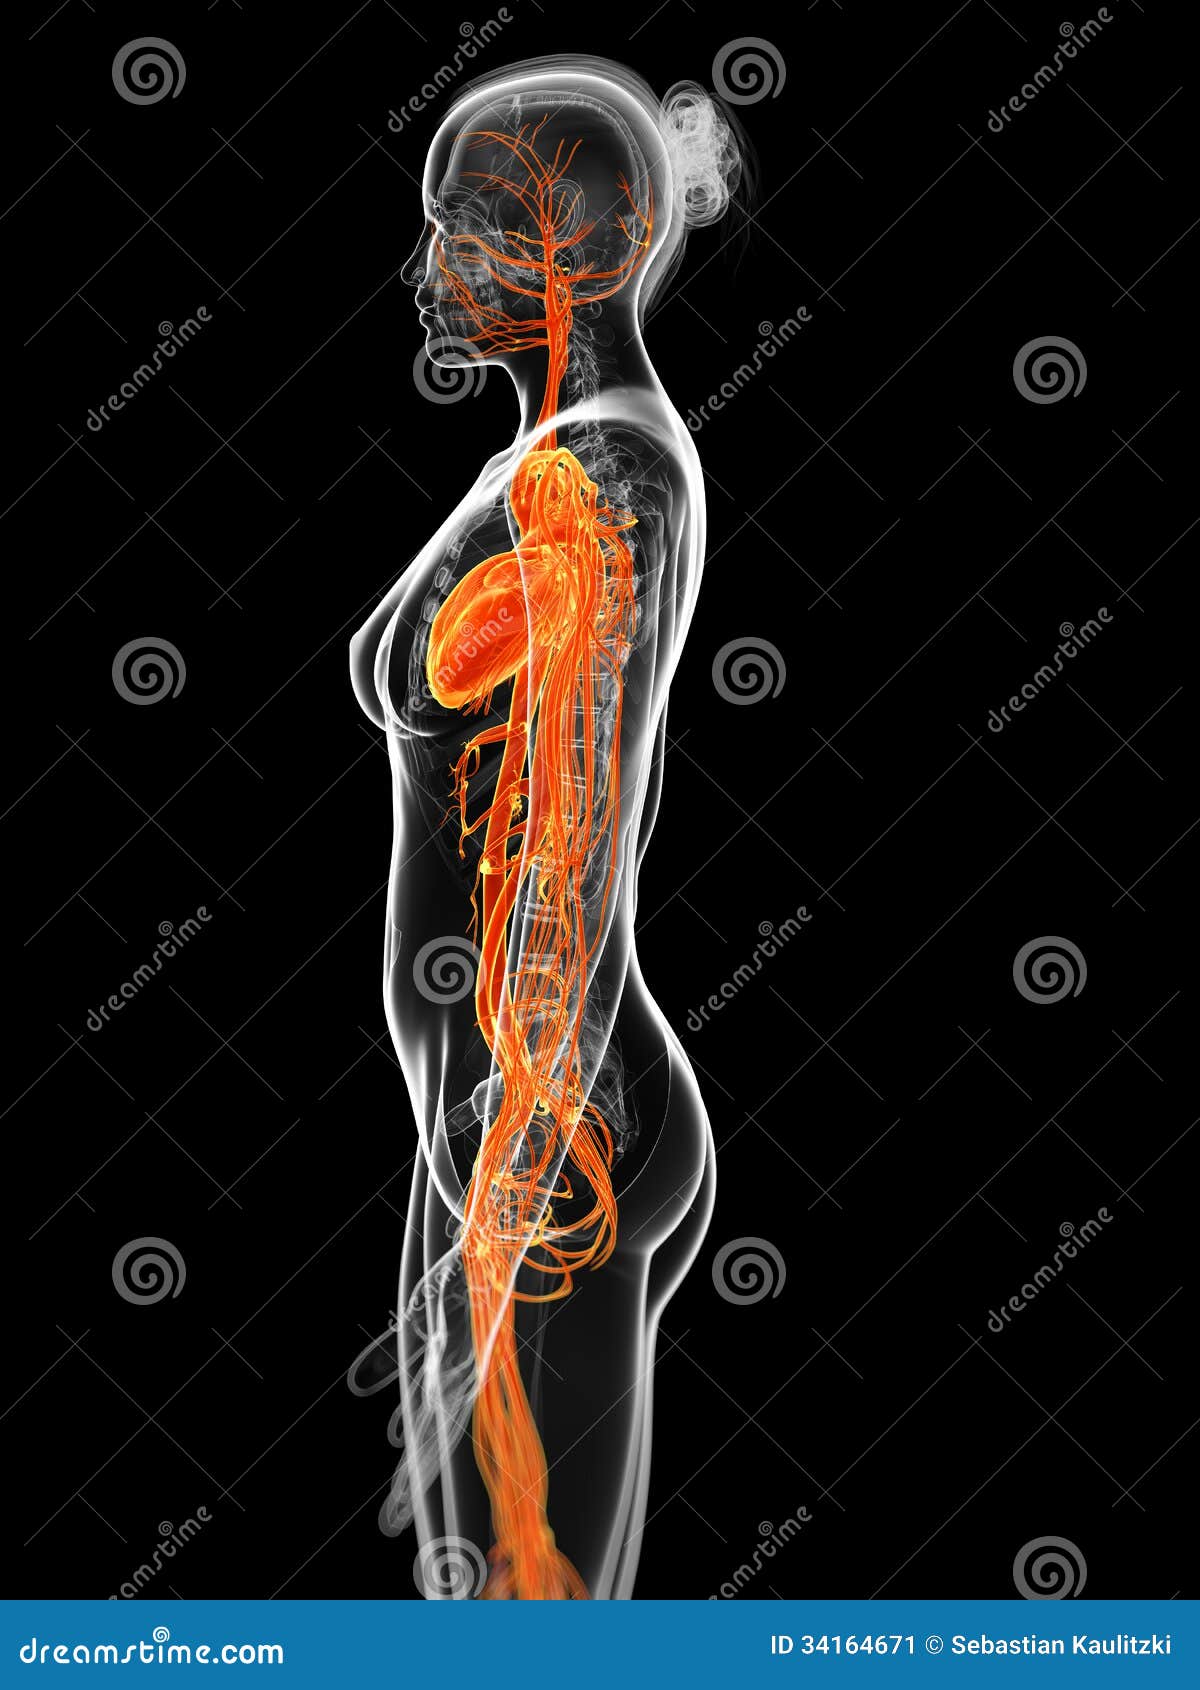 female vascular system